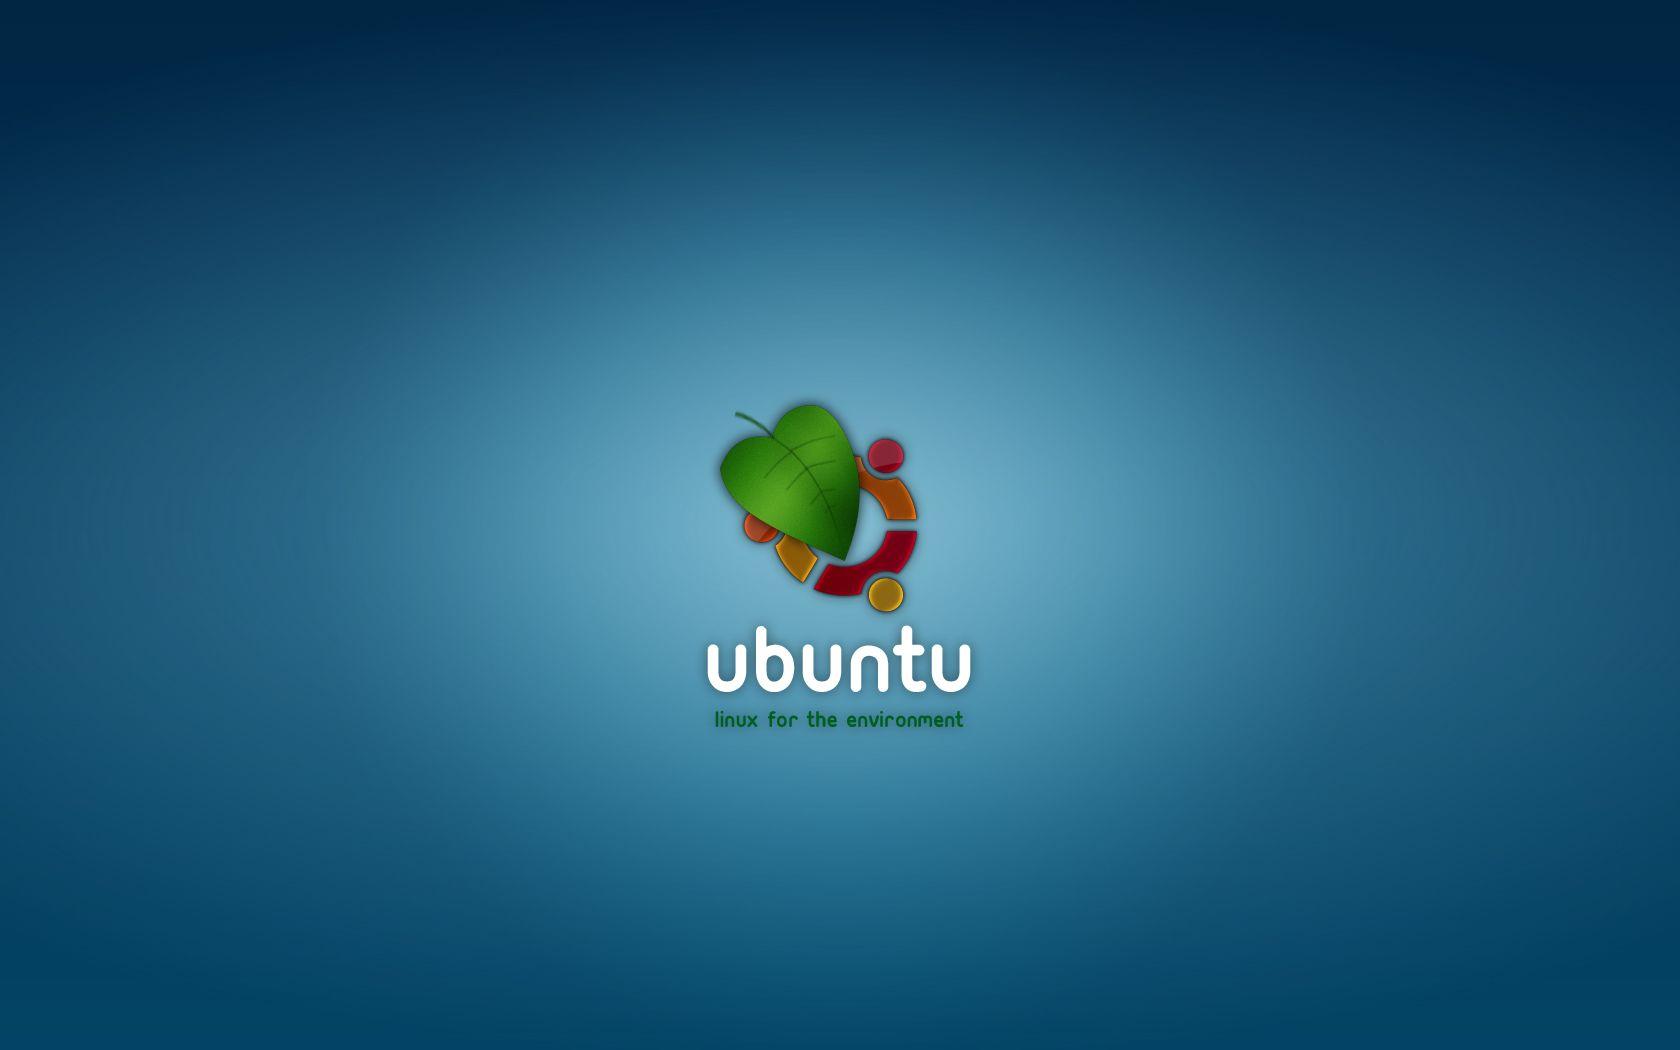 Ubuntu Linux Wallpaper